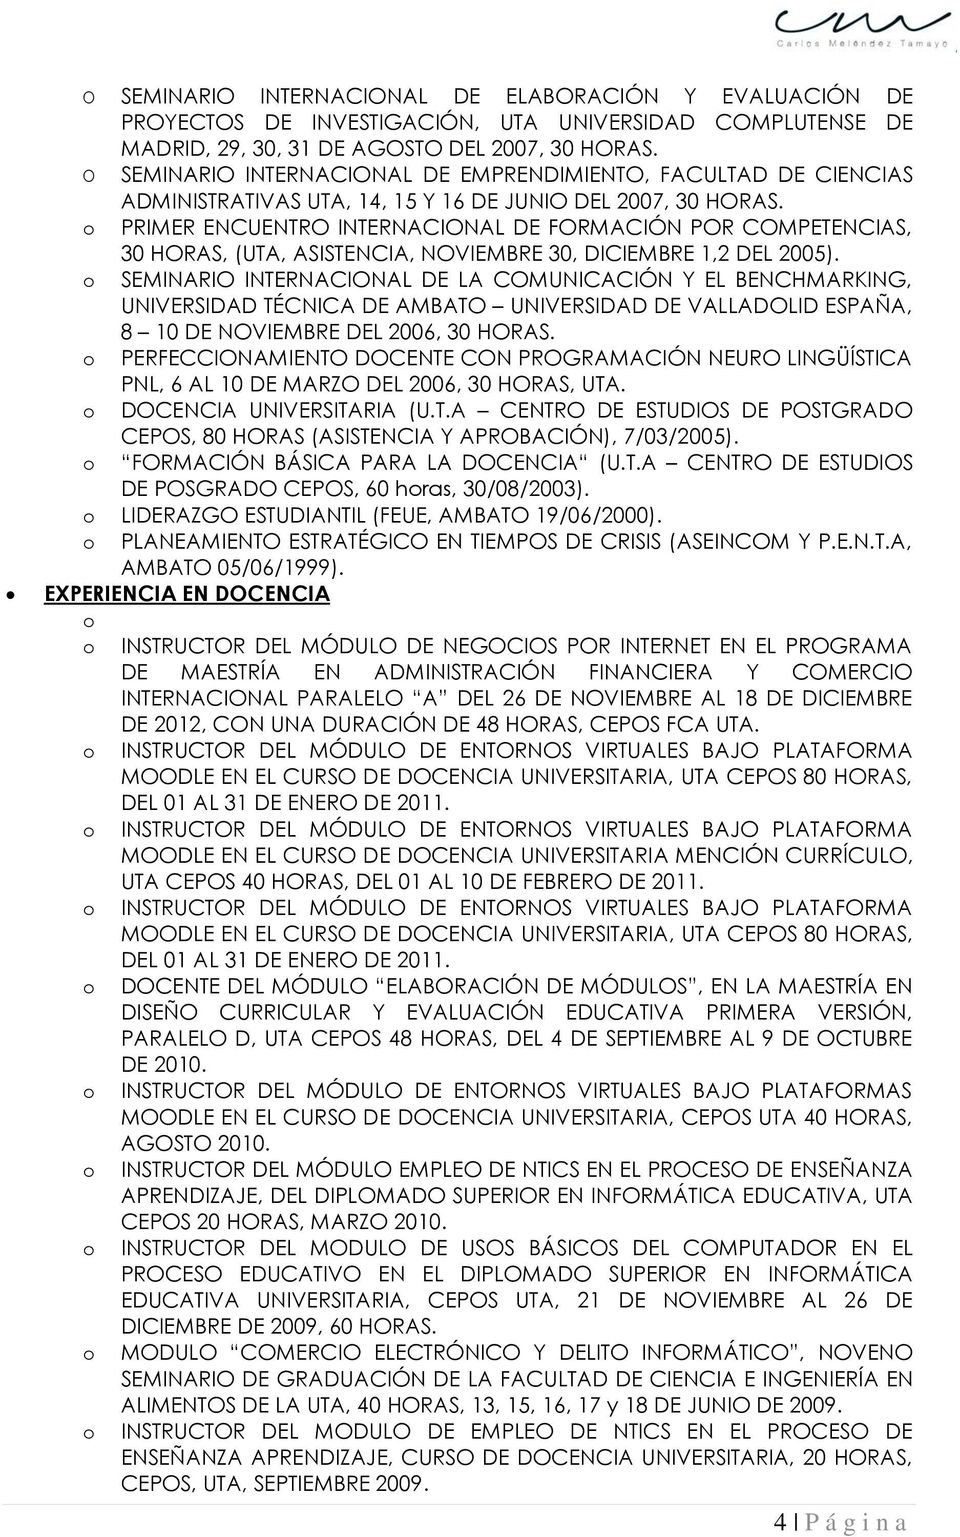 PRIMER ENCUENTRO INTERNACIONAL DE FORMACIÓN POR COMPETENCIAS, 30 HORAS, (UTA, ASISTENCIA, NOVIEMBRE 30, DICIEMBRE 1,2 DEL 2005).